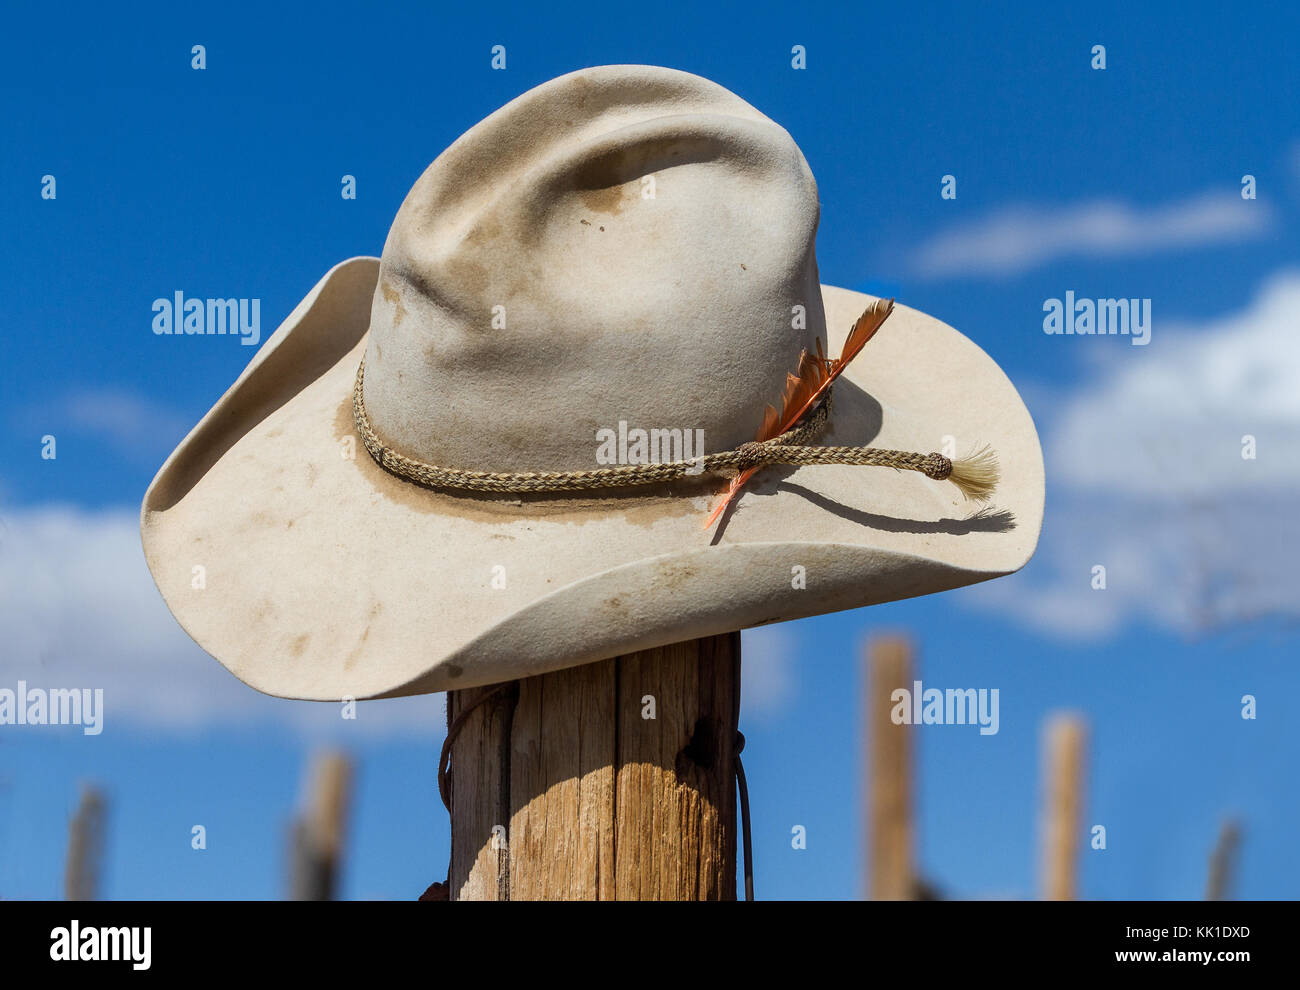 Una desgastada y bien gastado sombrero de cowboy se sitúa en la parte superior de un corral vallado en la esquina noroeste de Colorado. Foto de stock